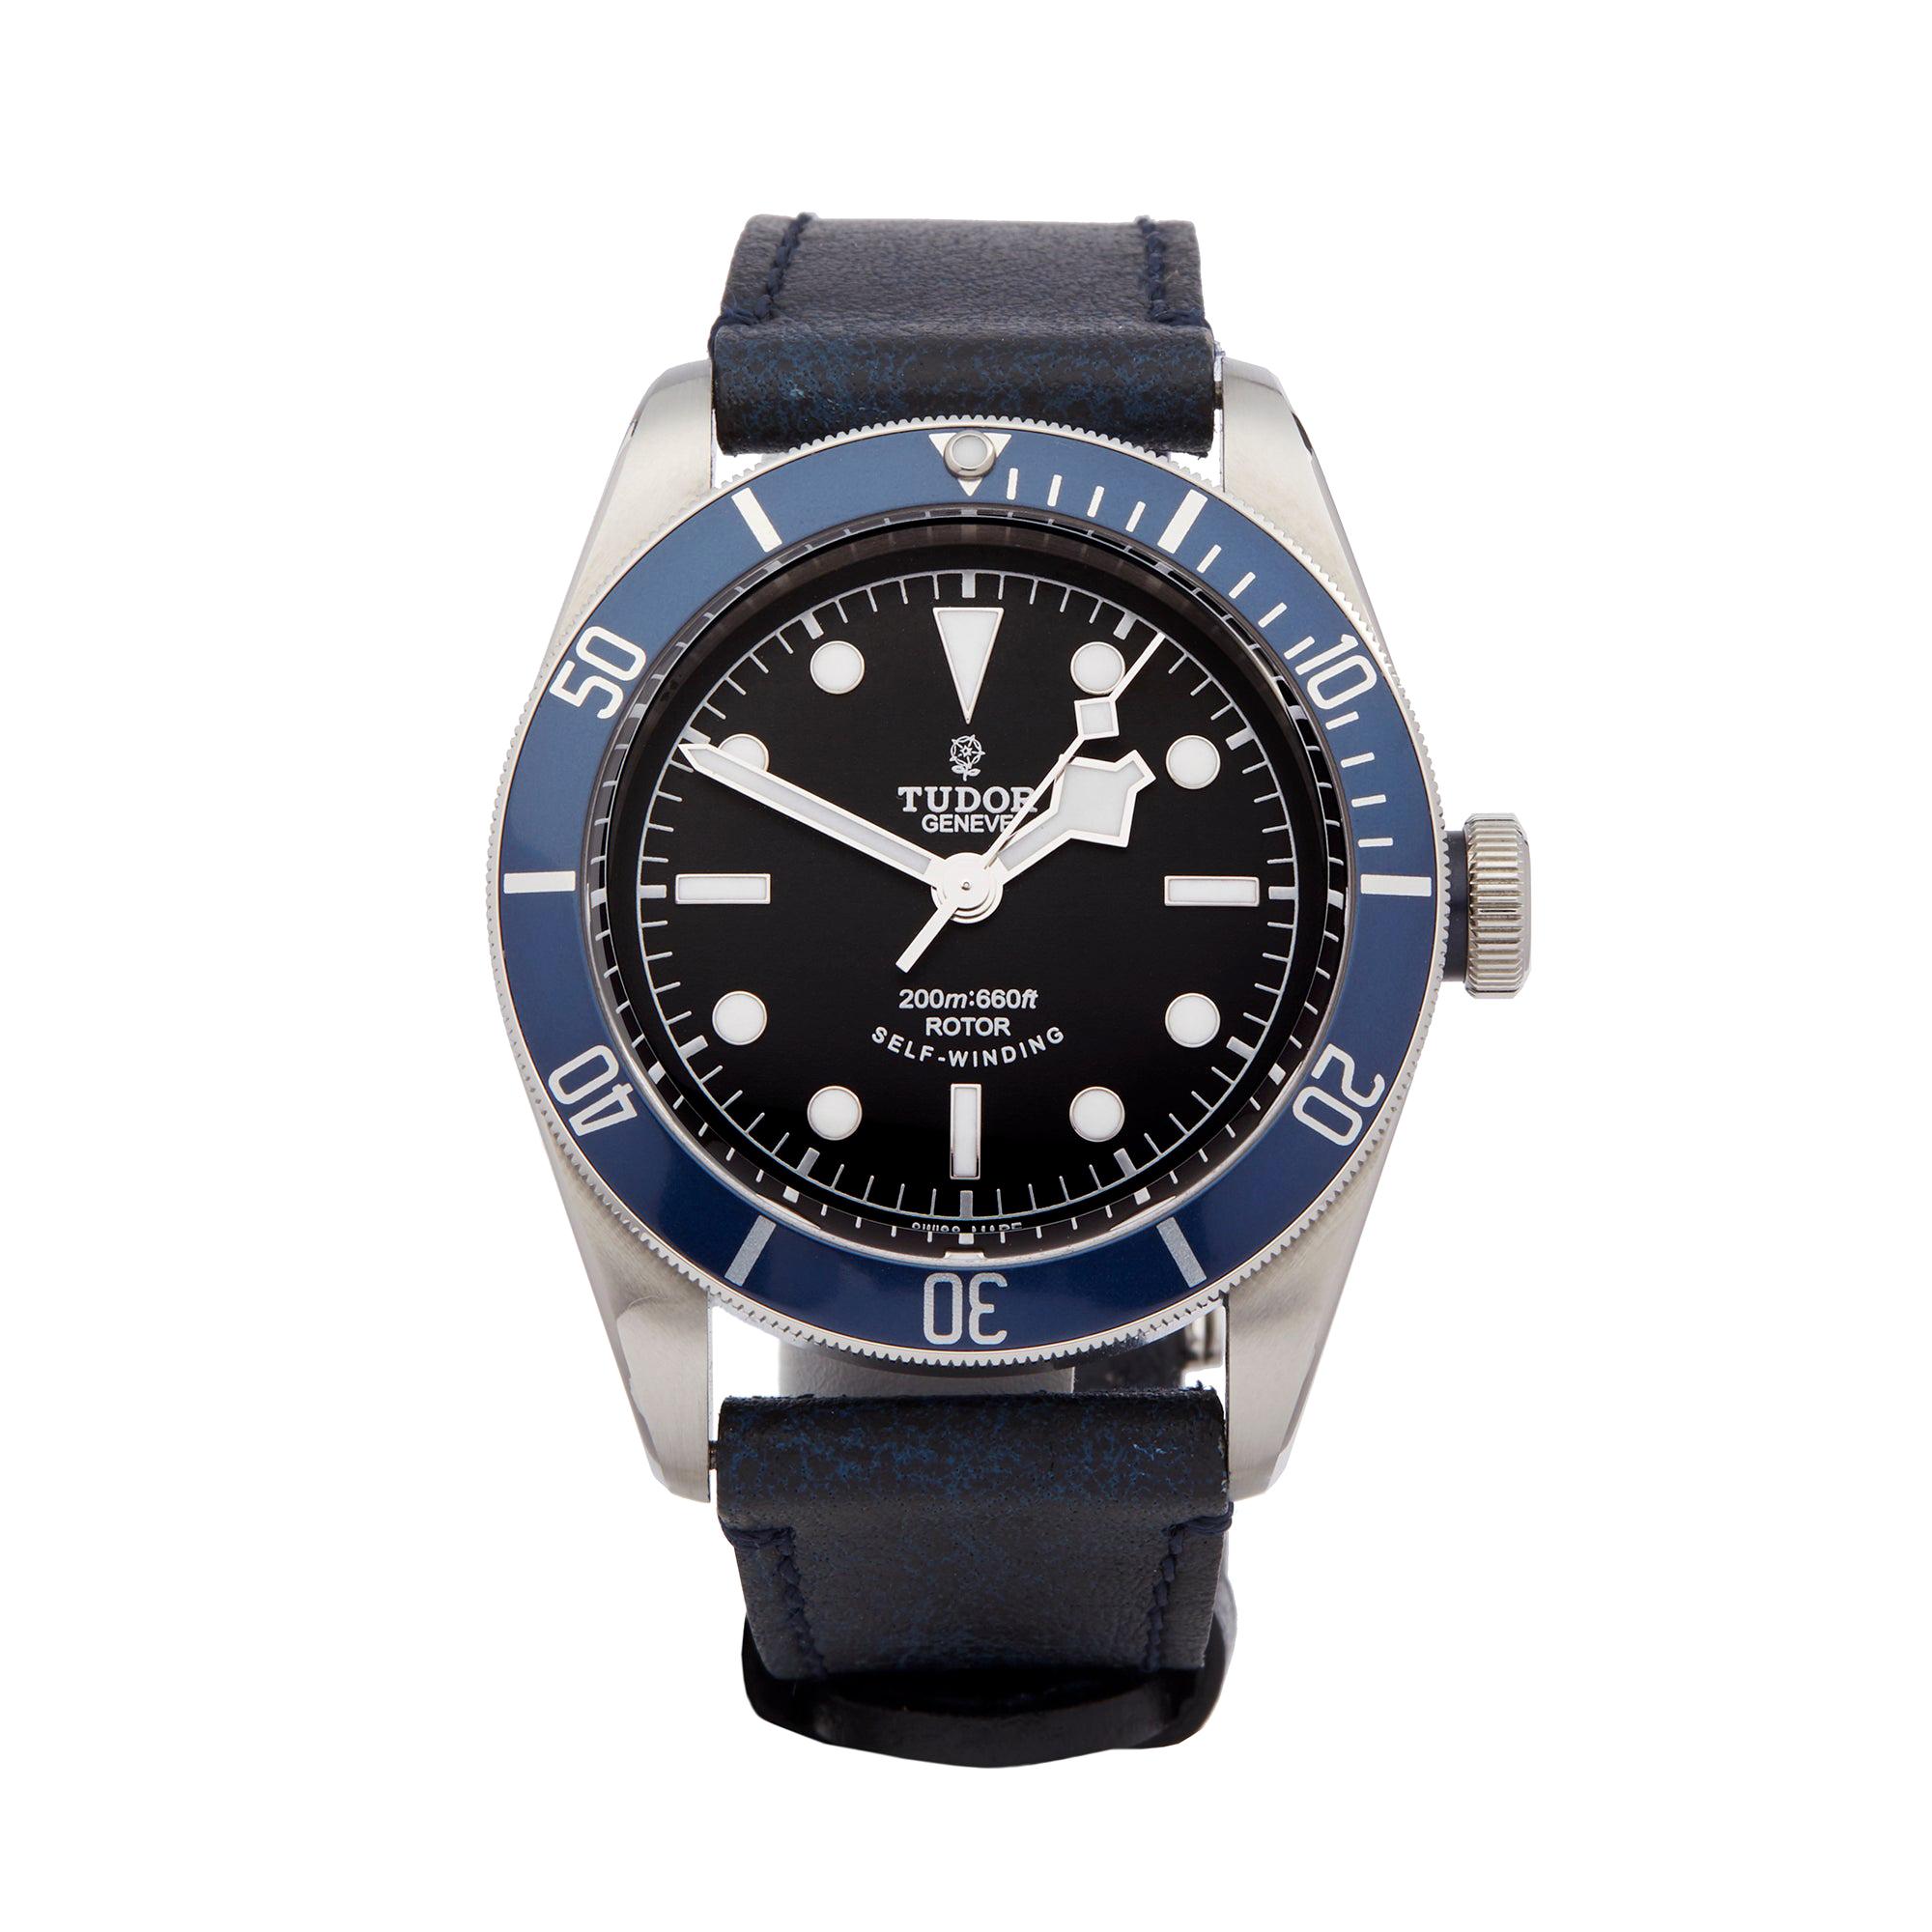 Tudor Black Bay Stainless Steel 79220B Wristwatch